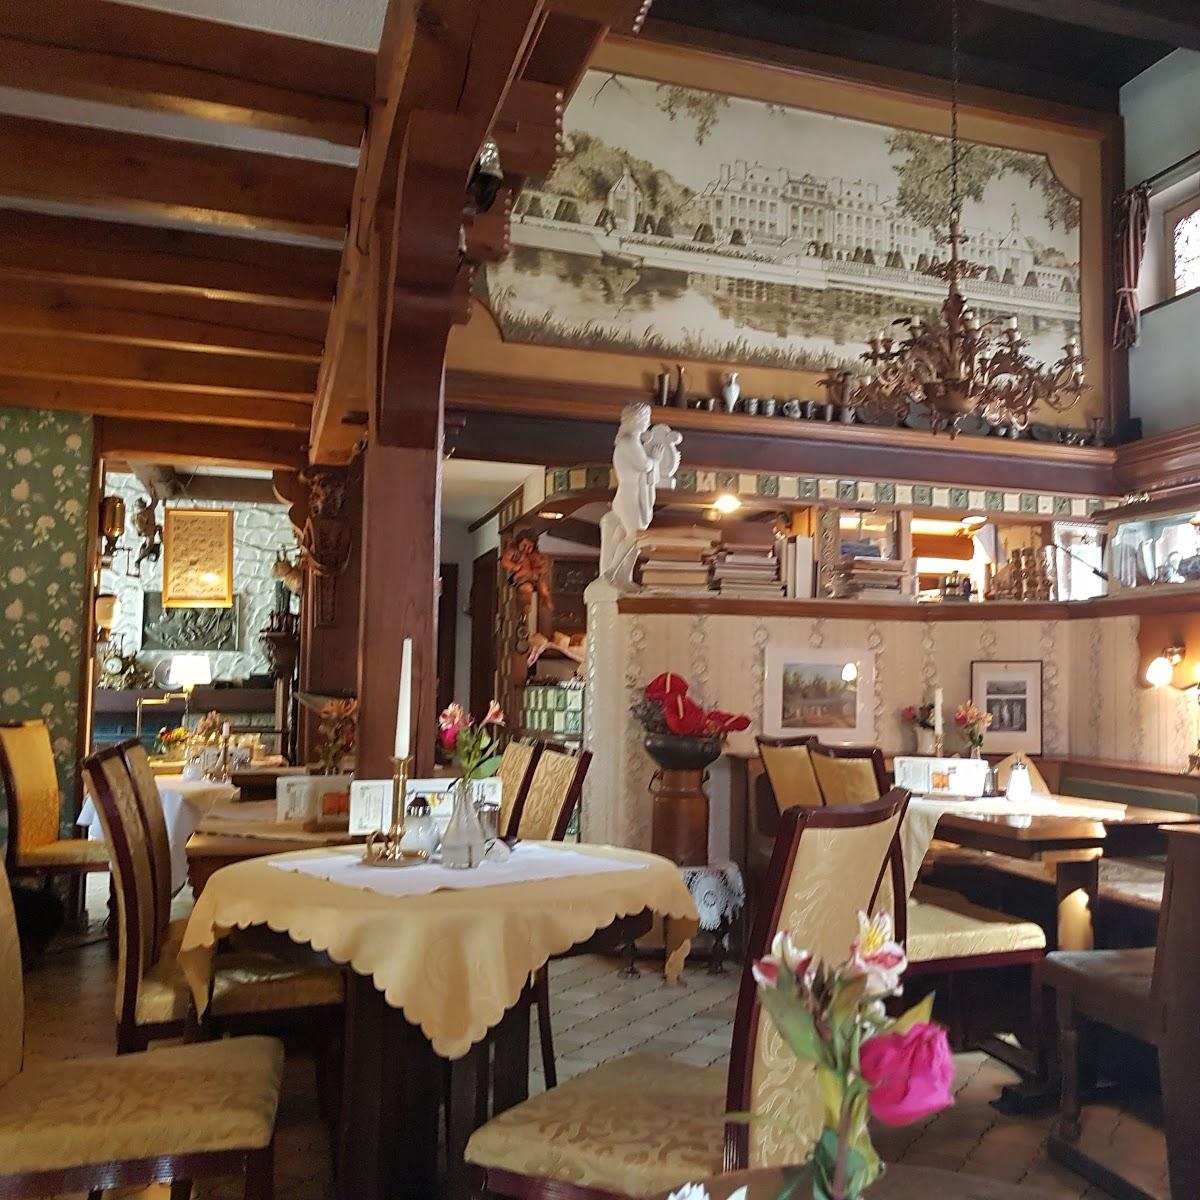 Restaurant "Schlaun Cafe" in Nordkirchen